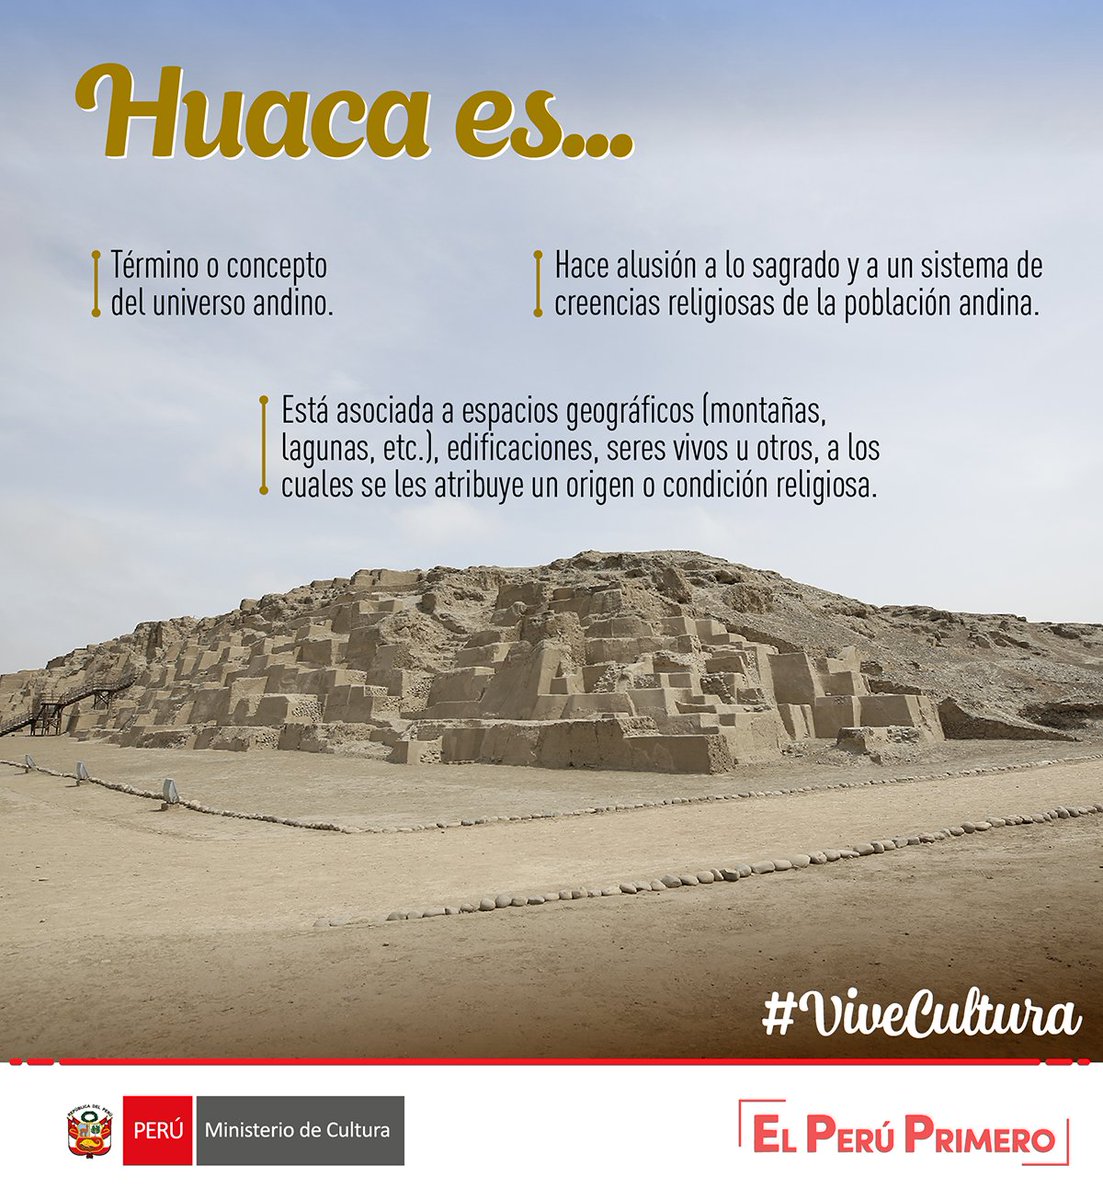 ☝🏽El significado de #Huaca es más amplio de lo que pensábamos. 

Cuéntanos, ¿qué huacas conoces? #ViveCultura #ElPerúEsSusCulturas